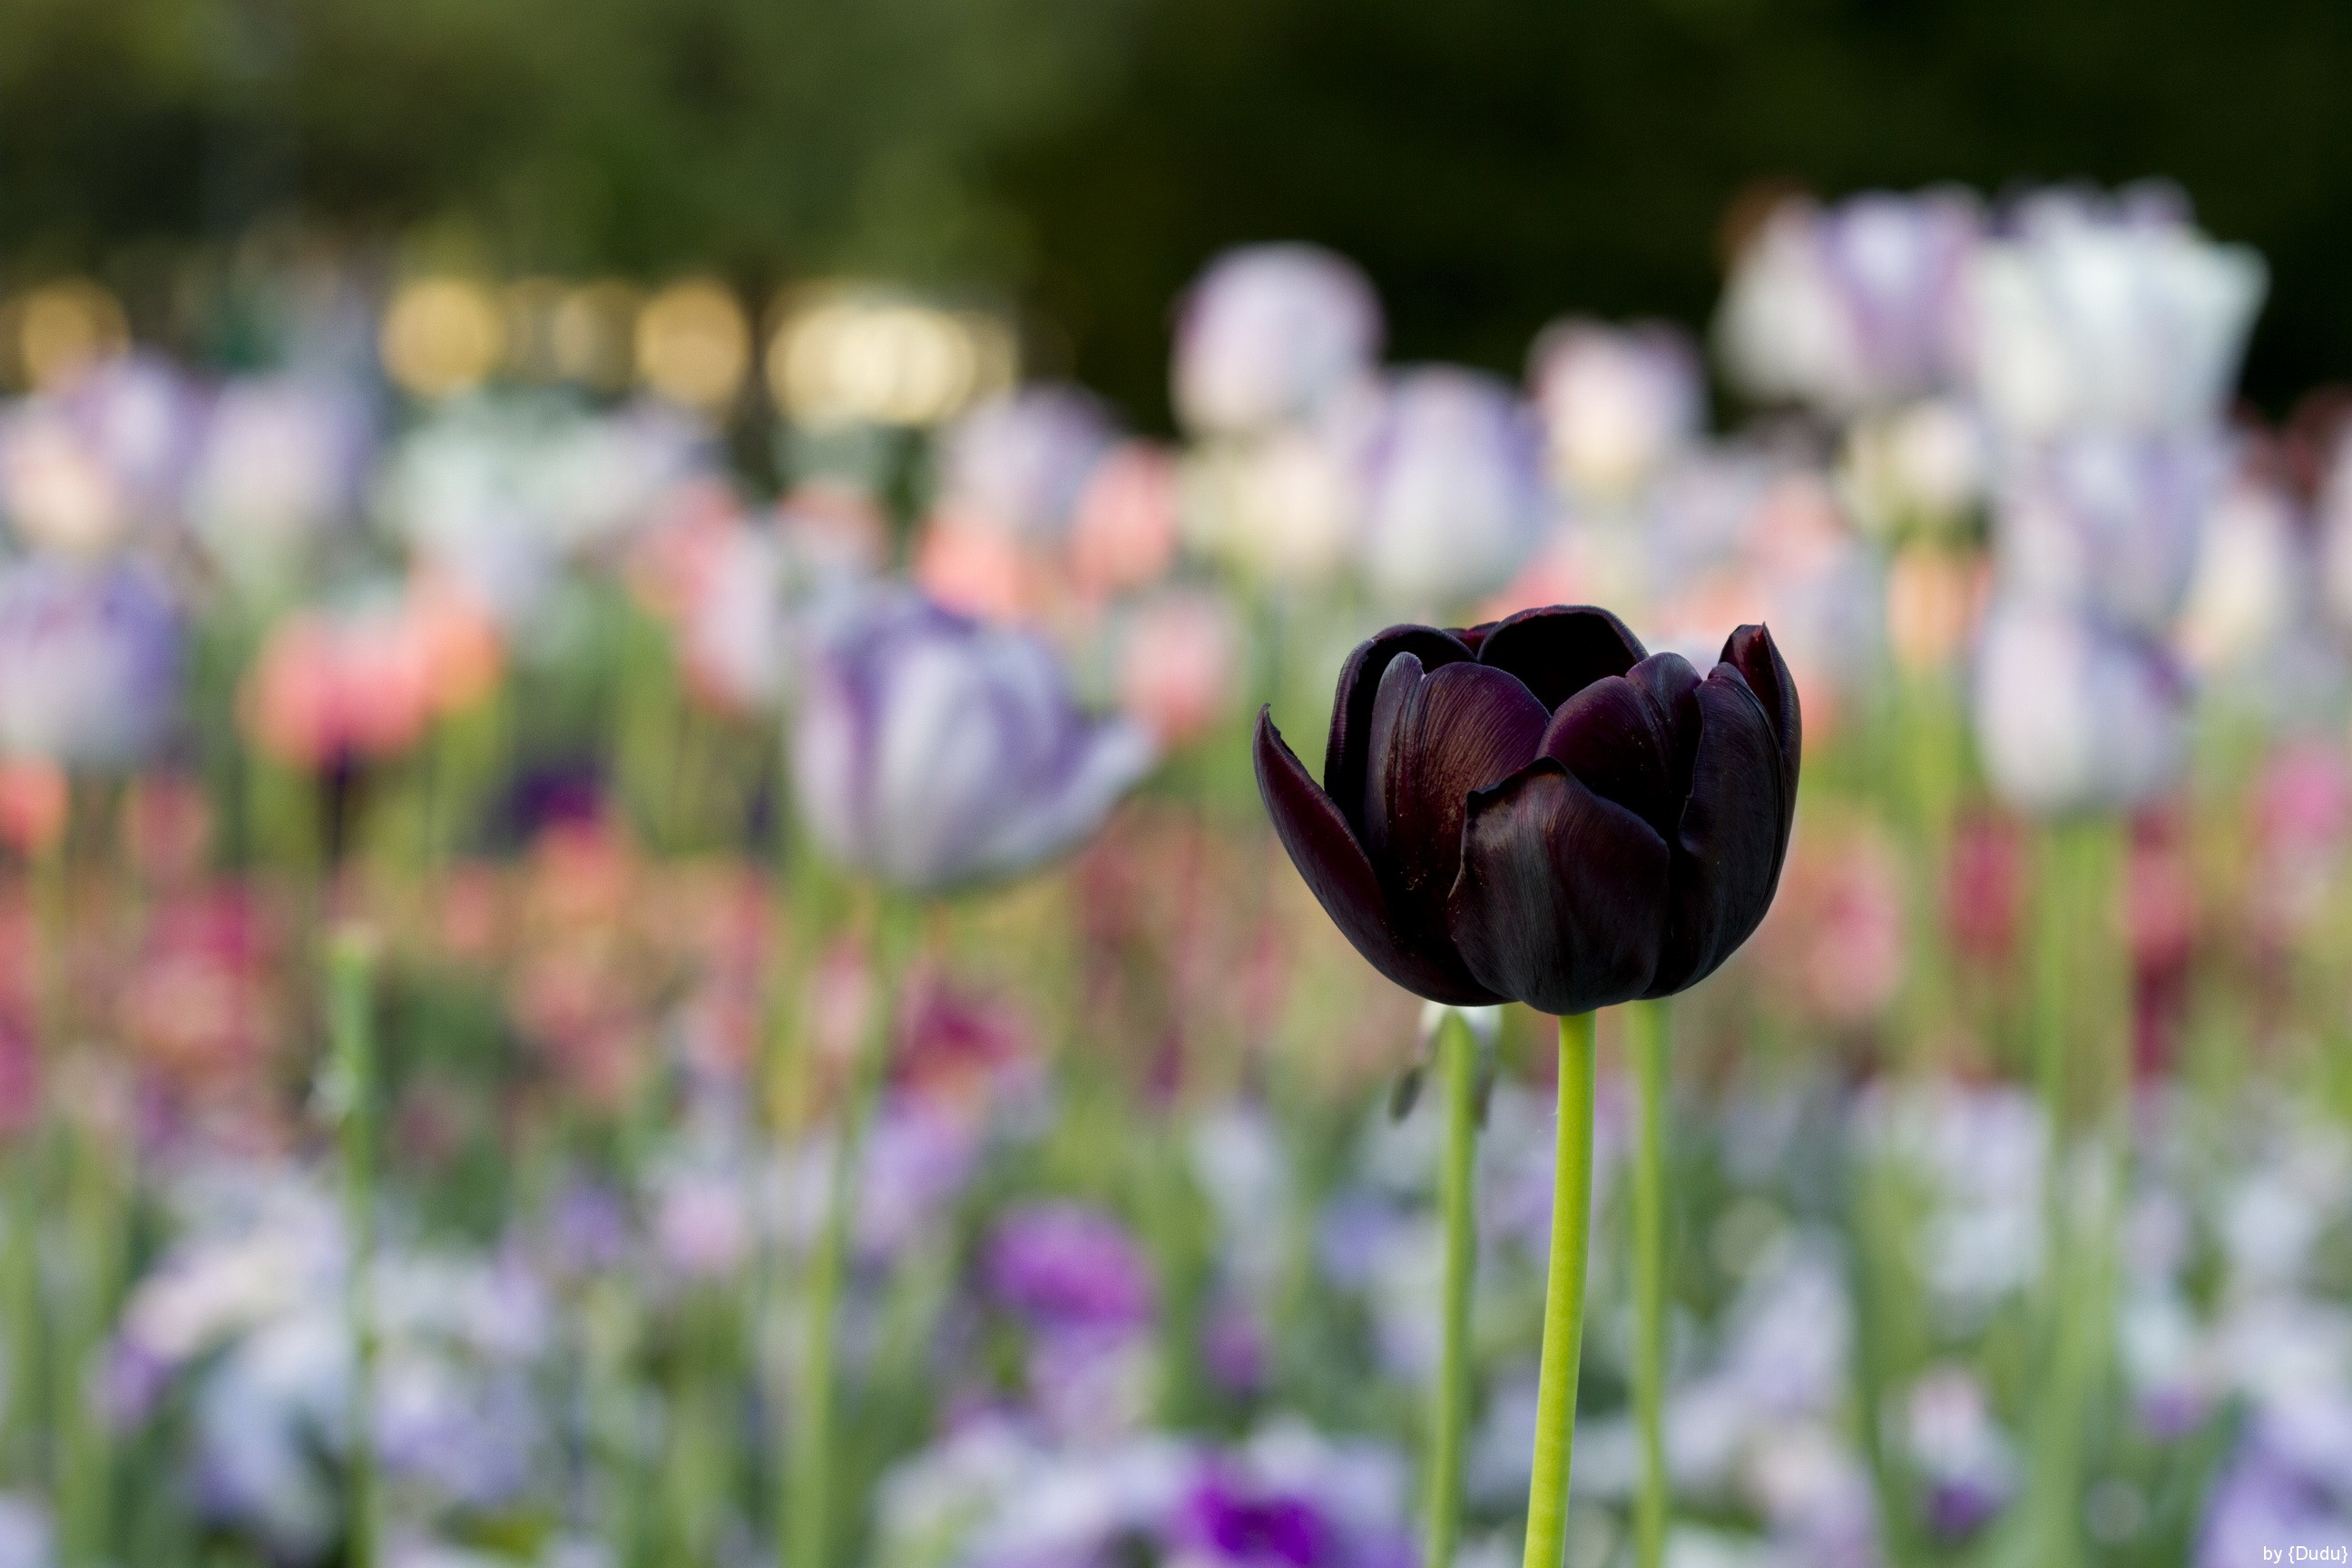 Tuyển tập hình ảnh hoa tulip đen đẹp nhất – Loài hoa chân thành, thủy chung - [Kích thước hình ảnh: 2592x1728 px]